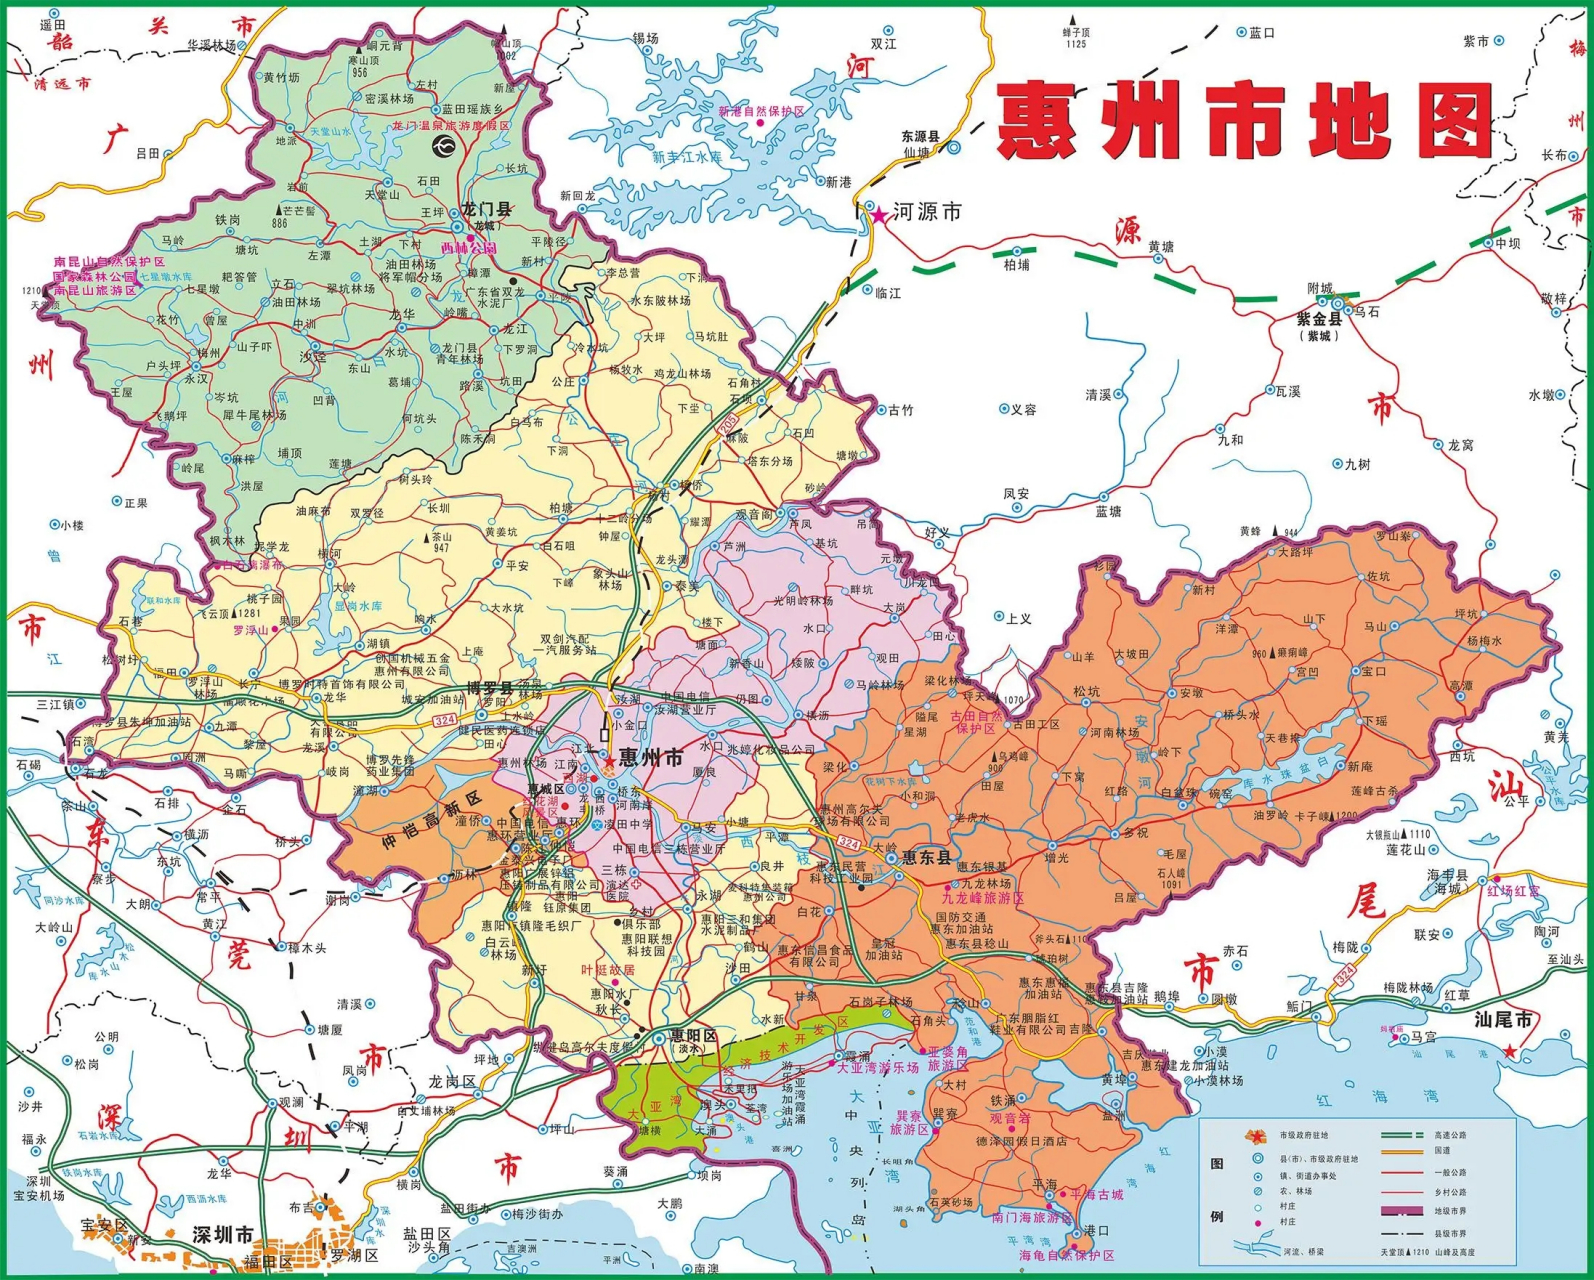 惠州近几年在深圳的带动下发展较快!